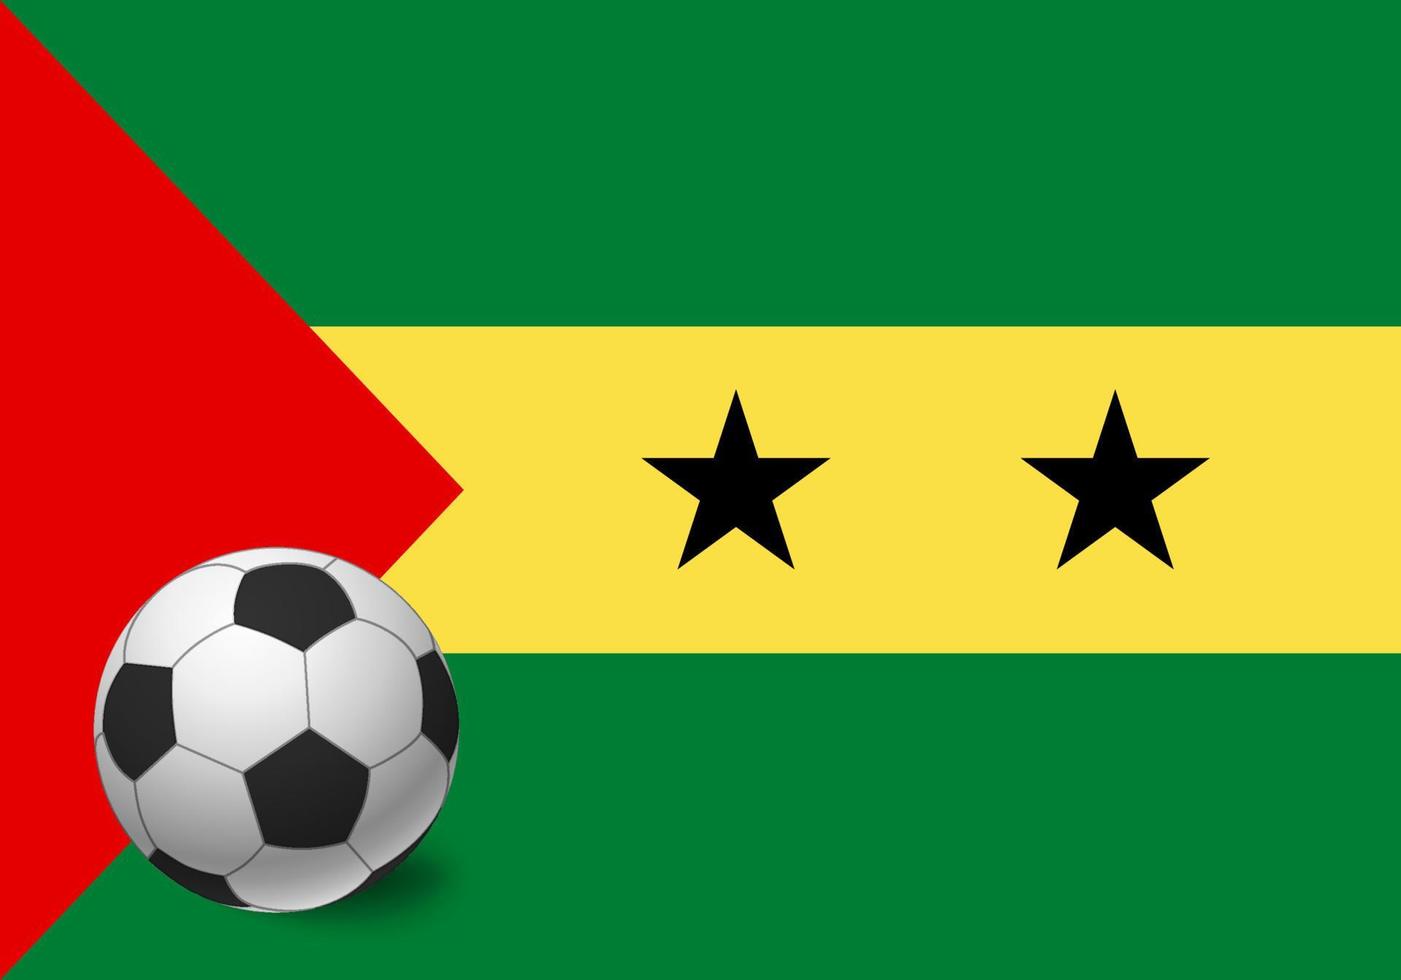 Sao Tome and Principe flag and soccer ball vector